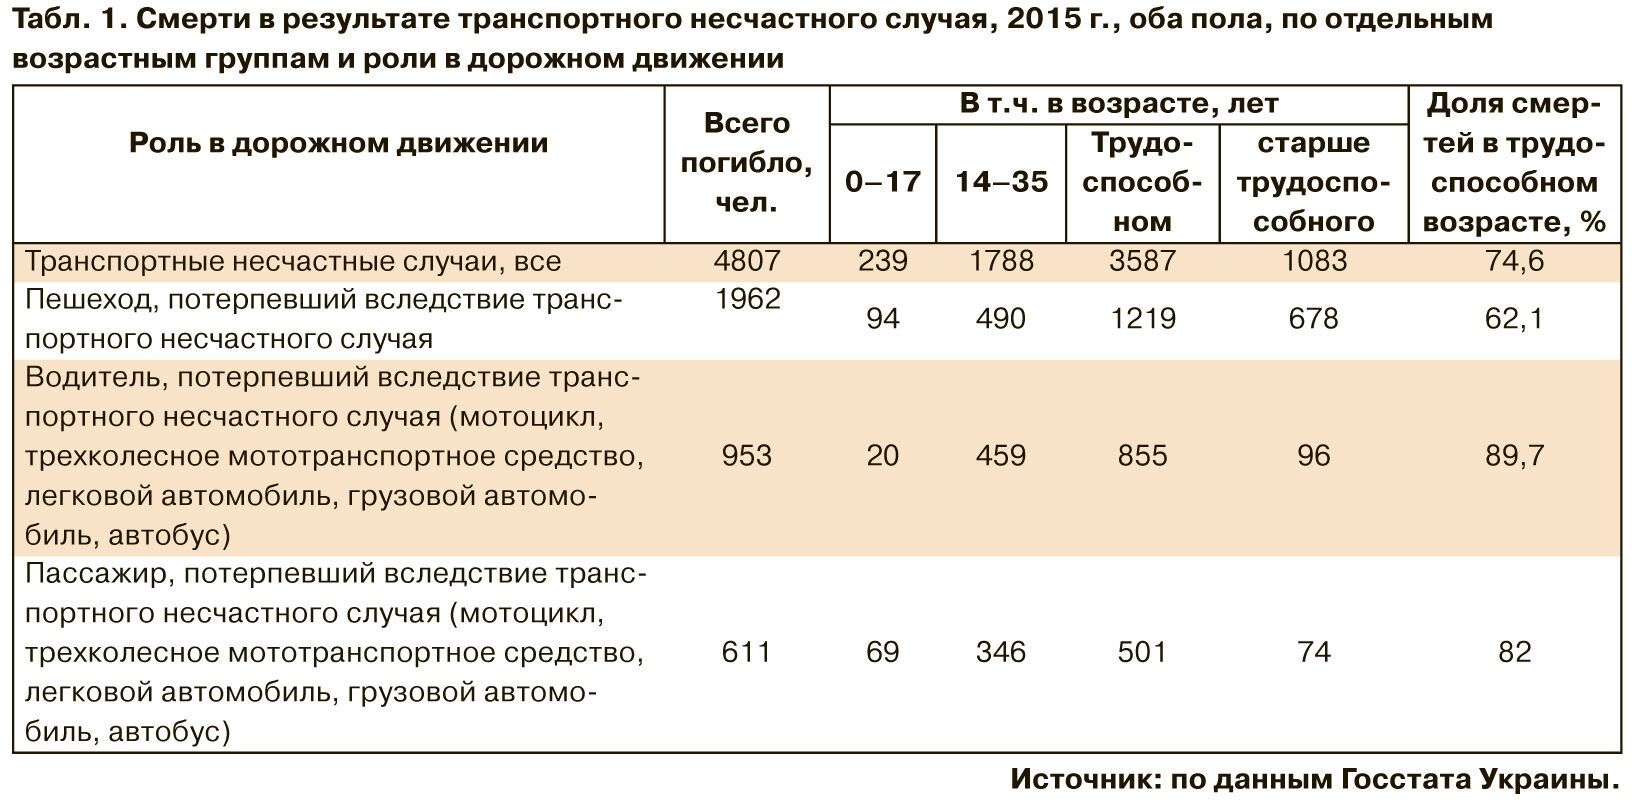 ДТП в Украине: озвучена страшная статистика по смертям. Инфографика